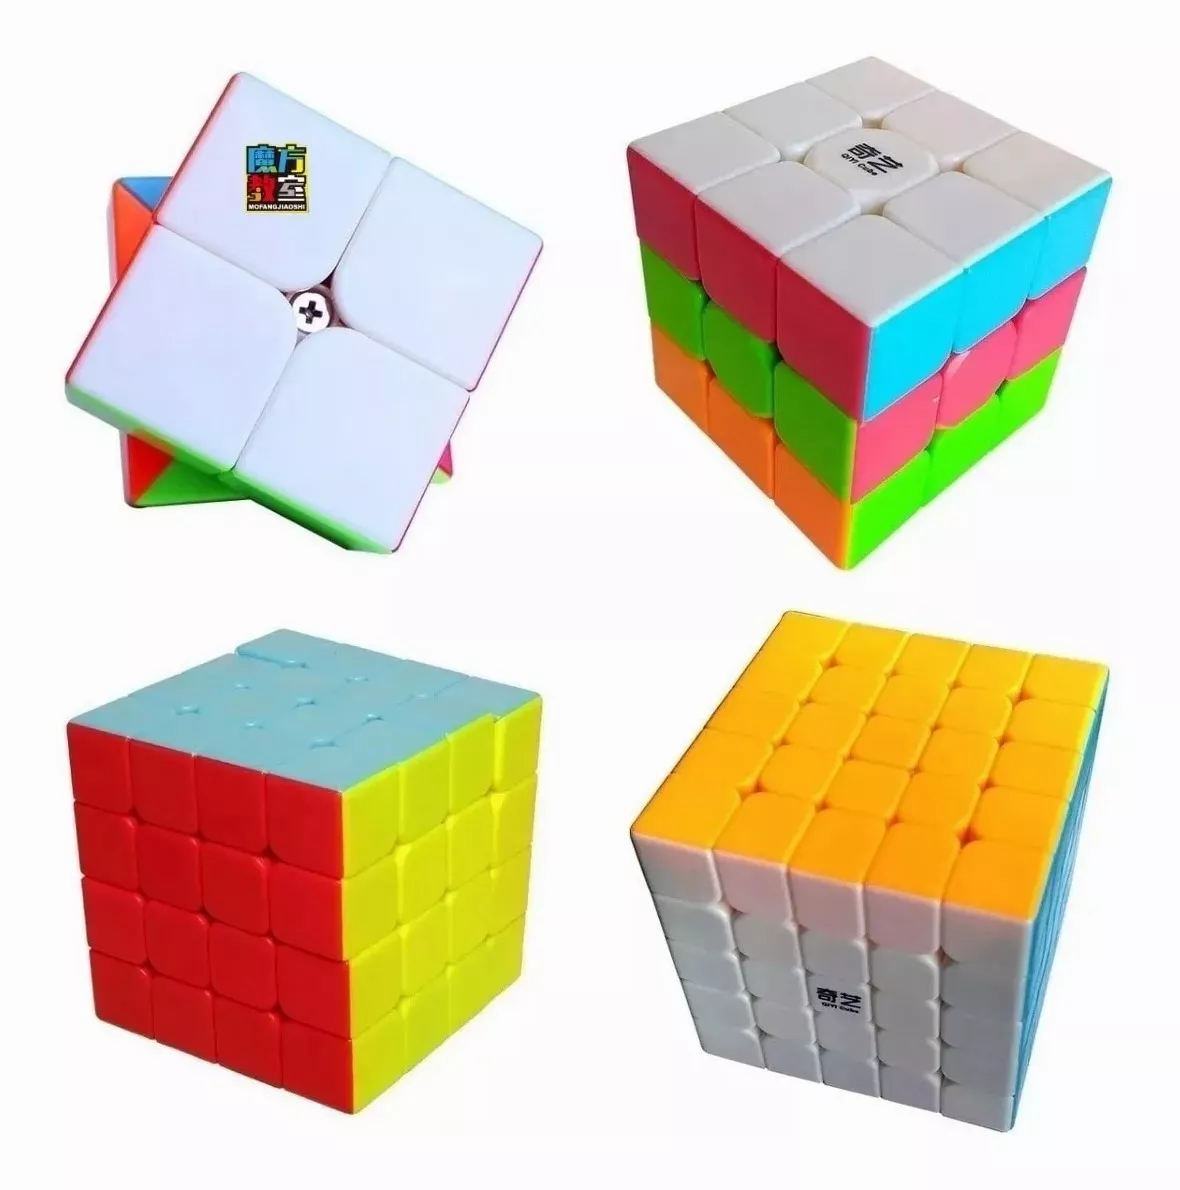 Pack 4 Cubos Tipo De Qiyi 2x2, 3x3, 4x4, 5x5